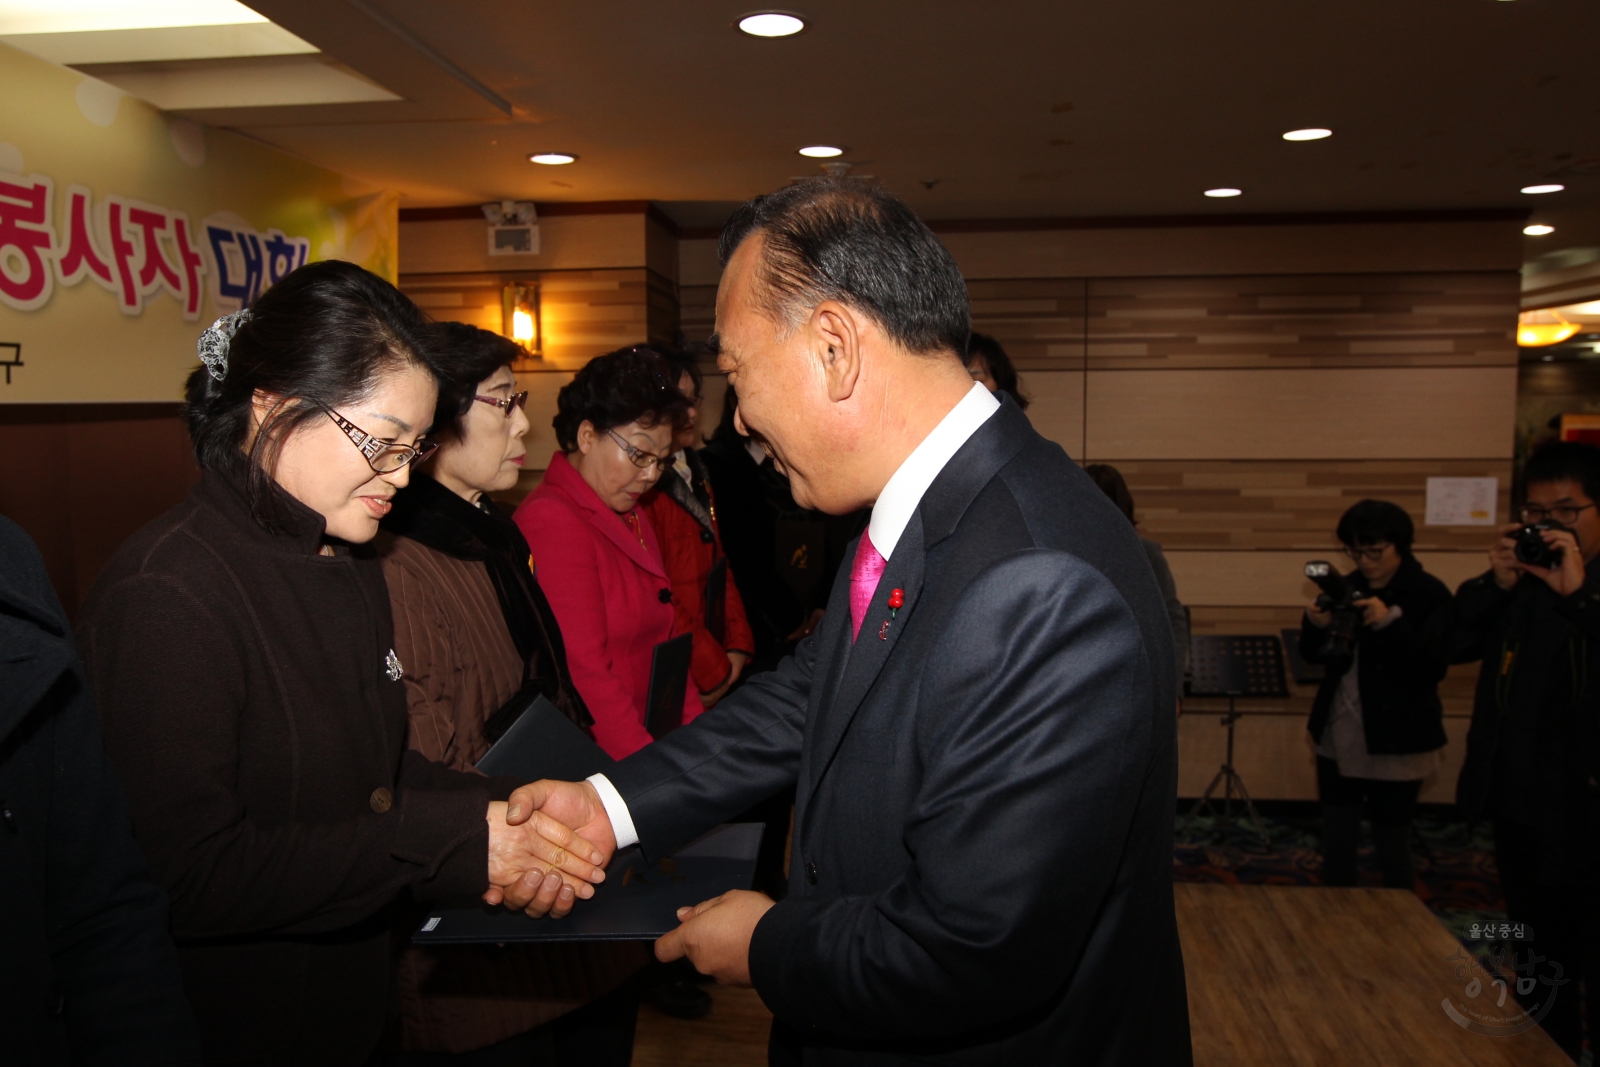 2013 울산광역시 남구 자원봉사자 대회 의 사진